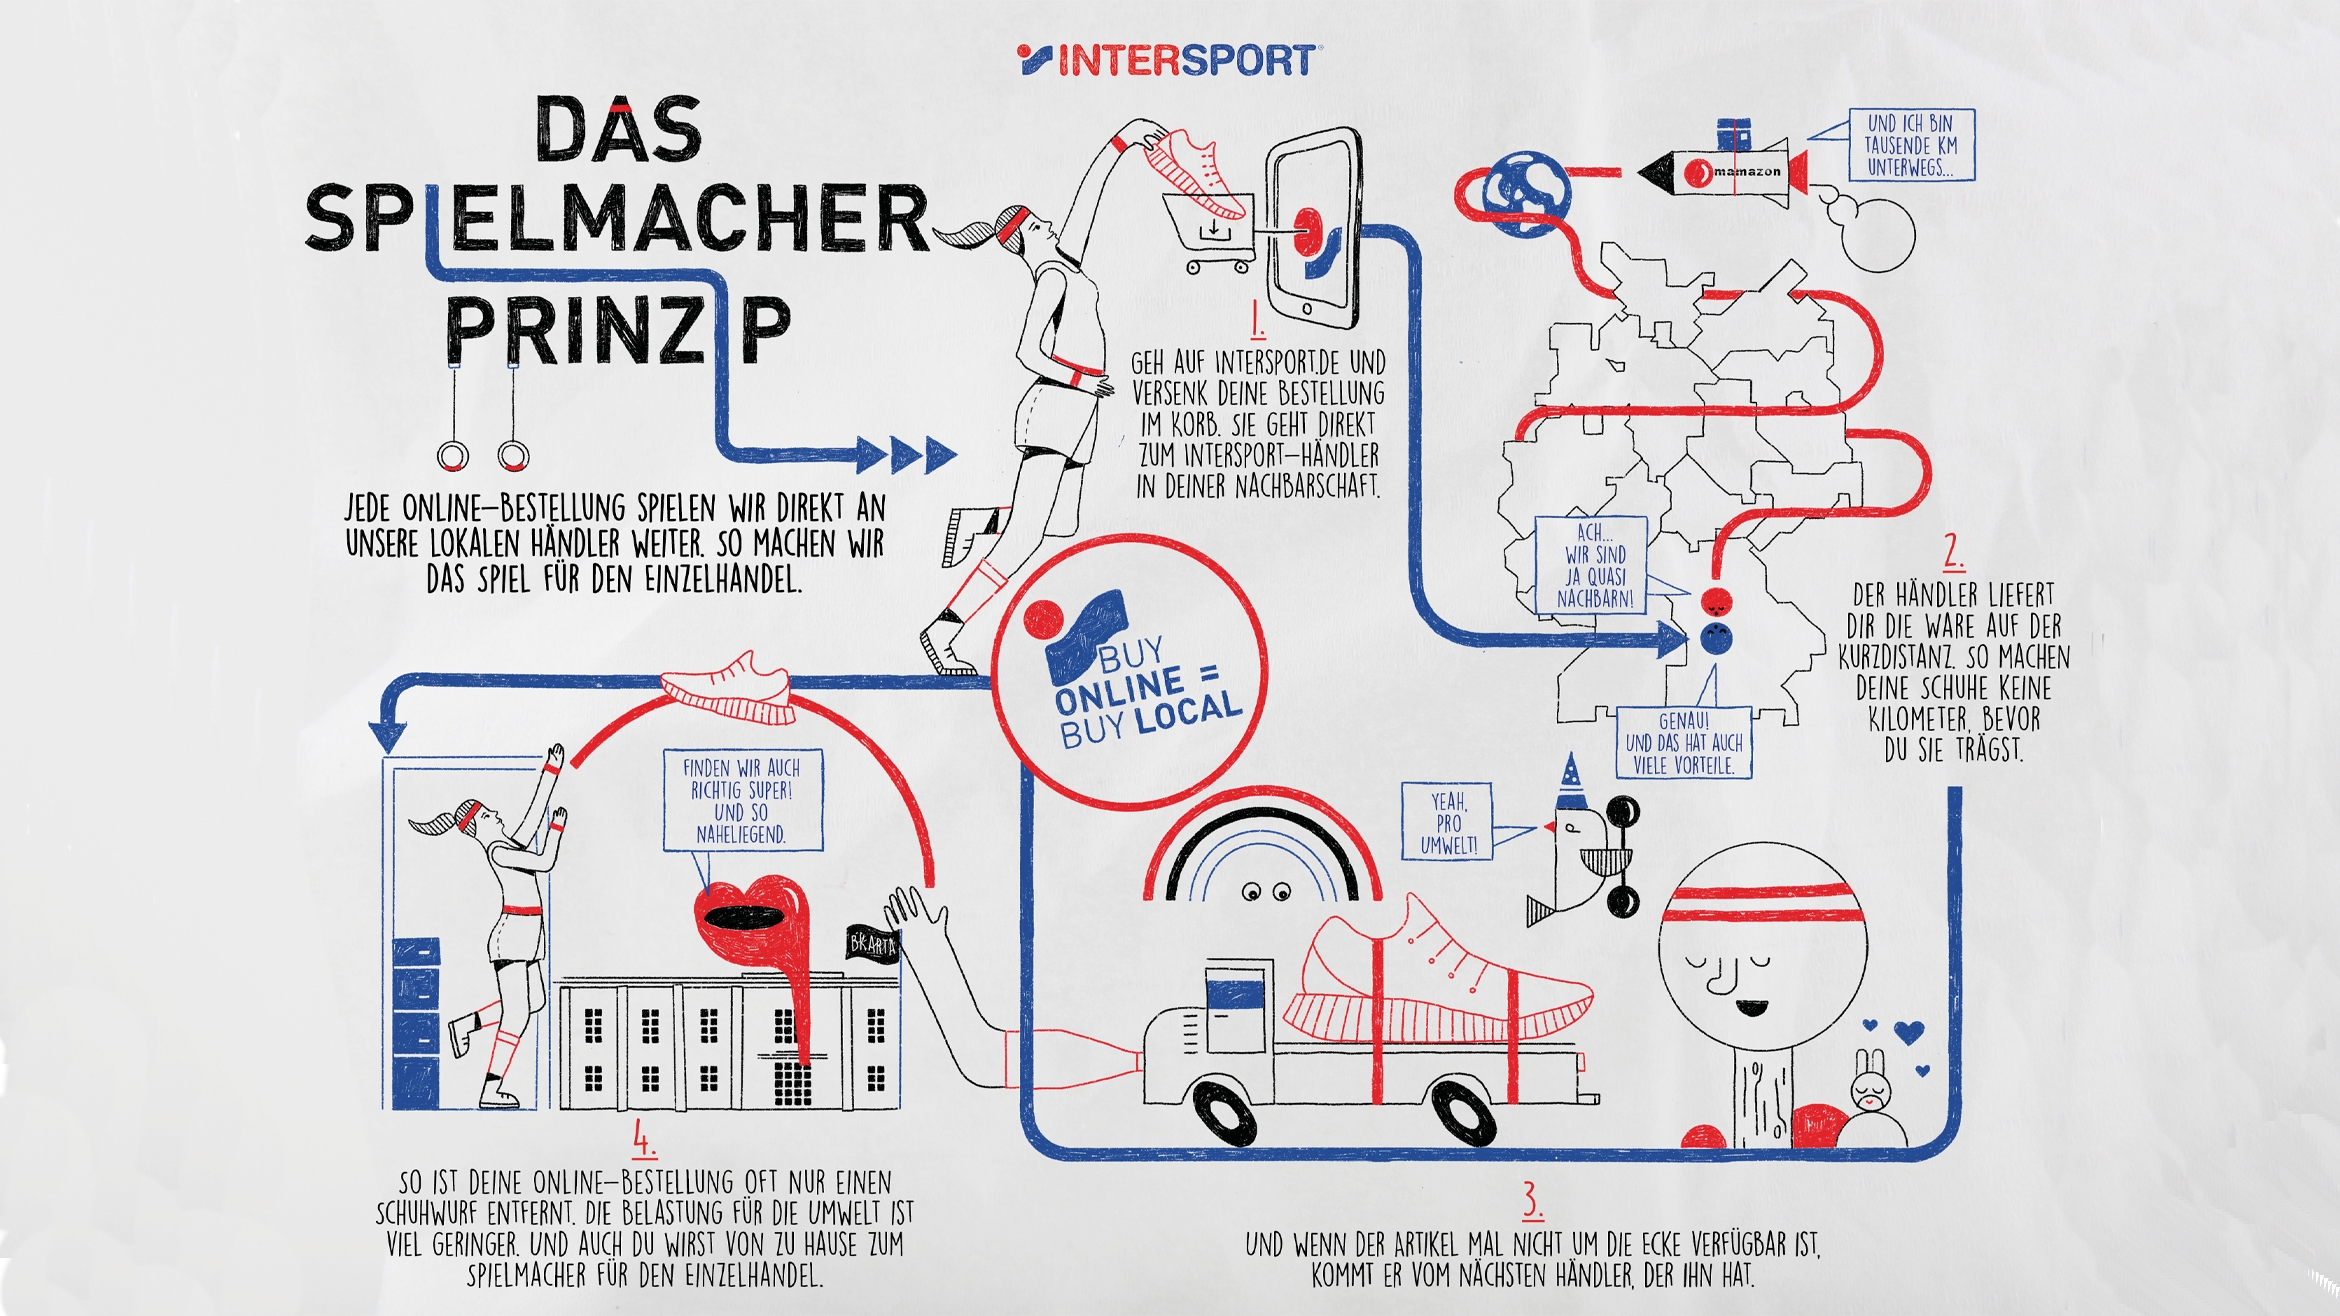 Das Spielmacherprinzip von Intersport – Illustration Doreen Borsutzki